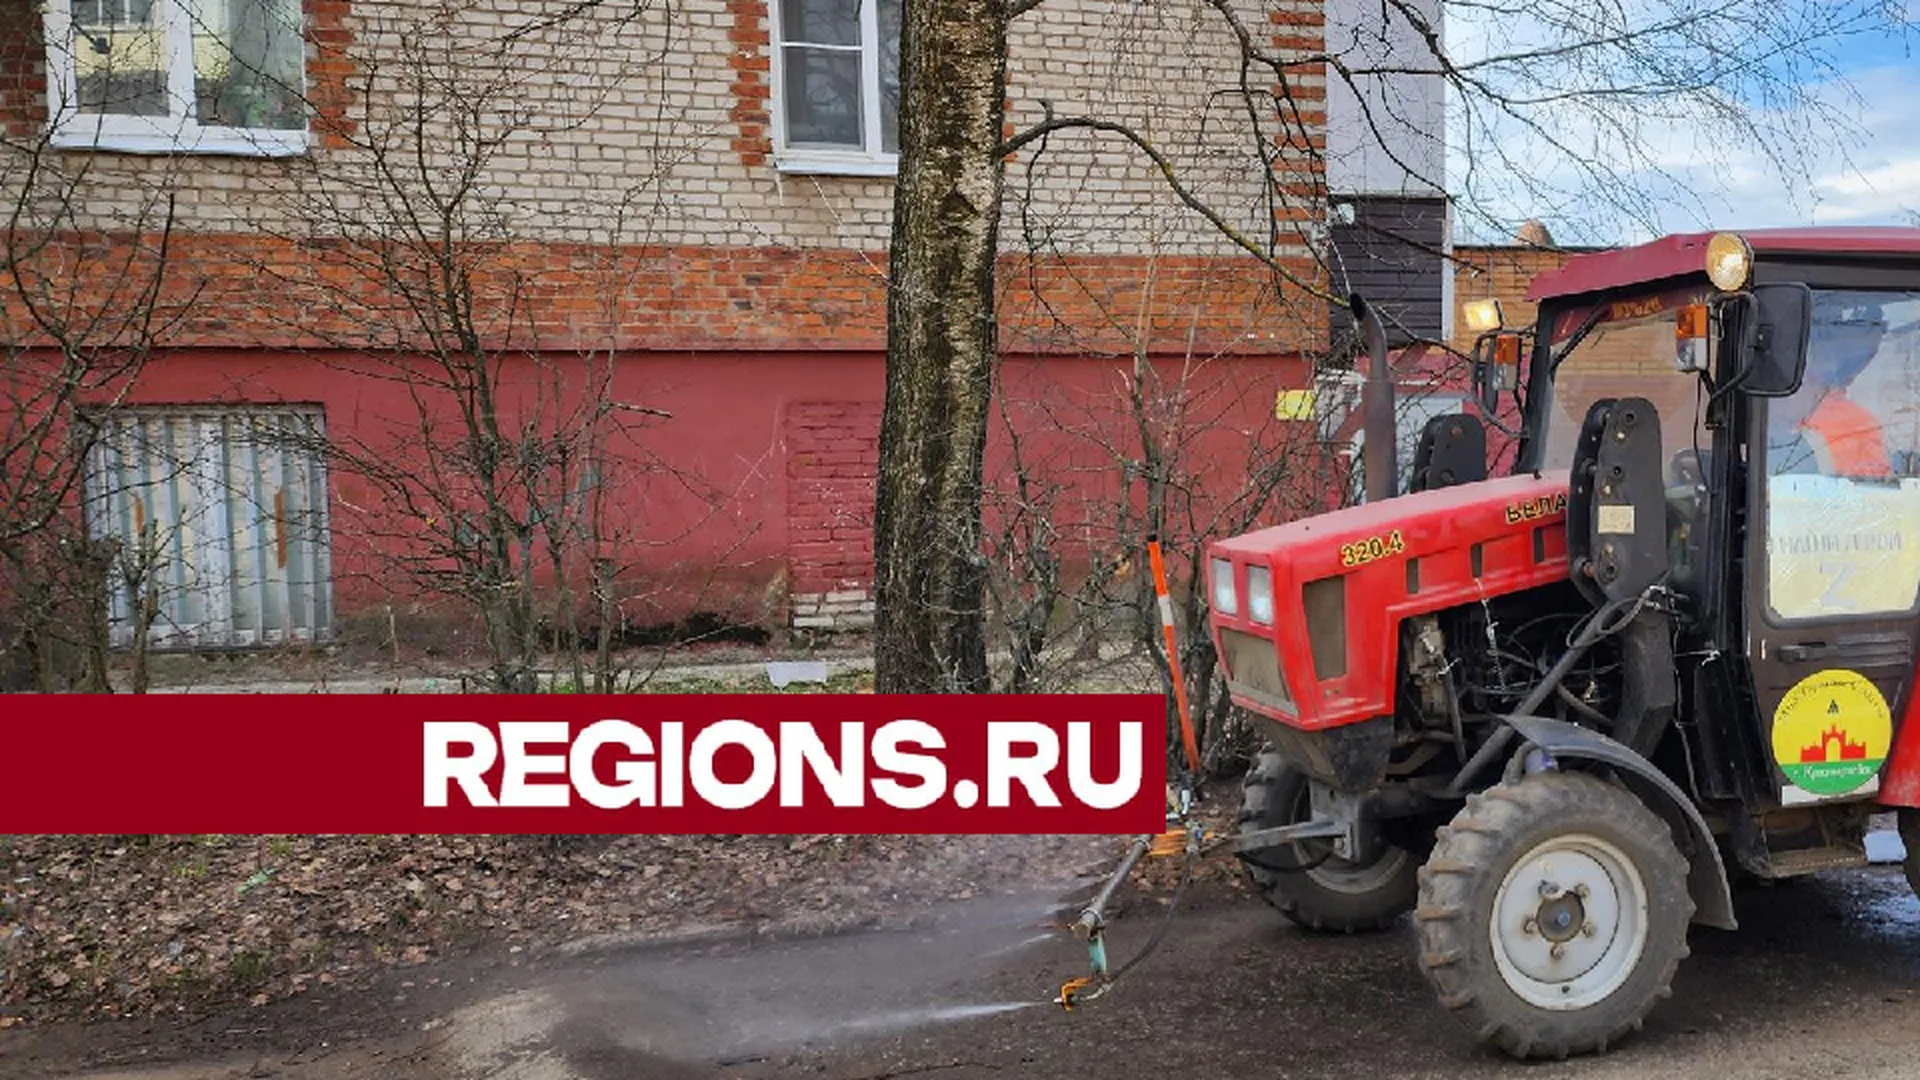 Работники МБУ приступили к активной уборке улиц в Красноармейске